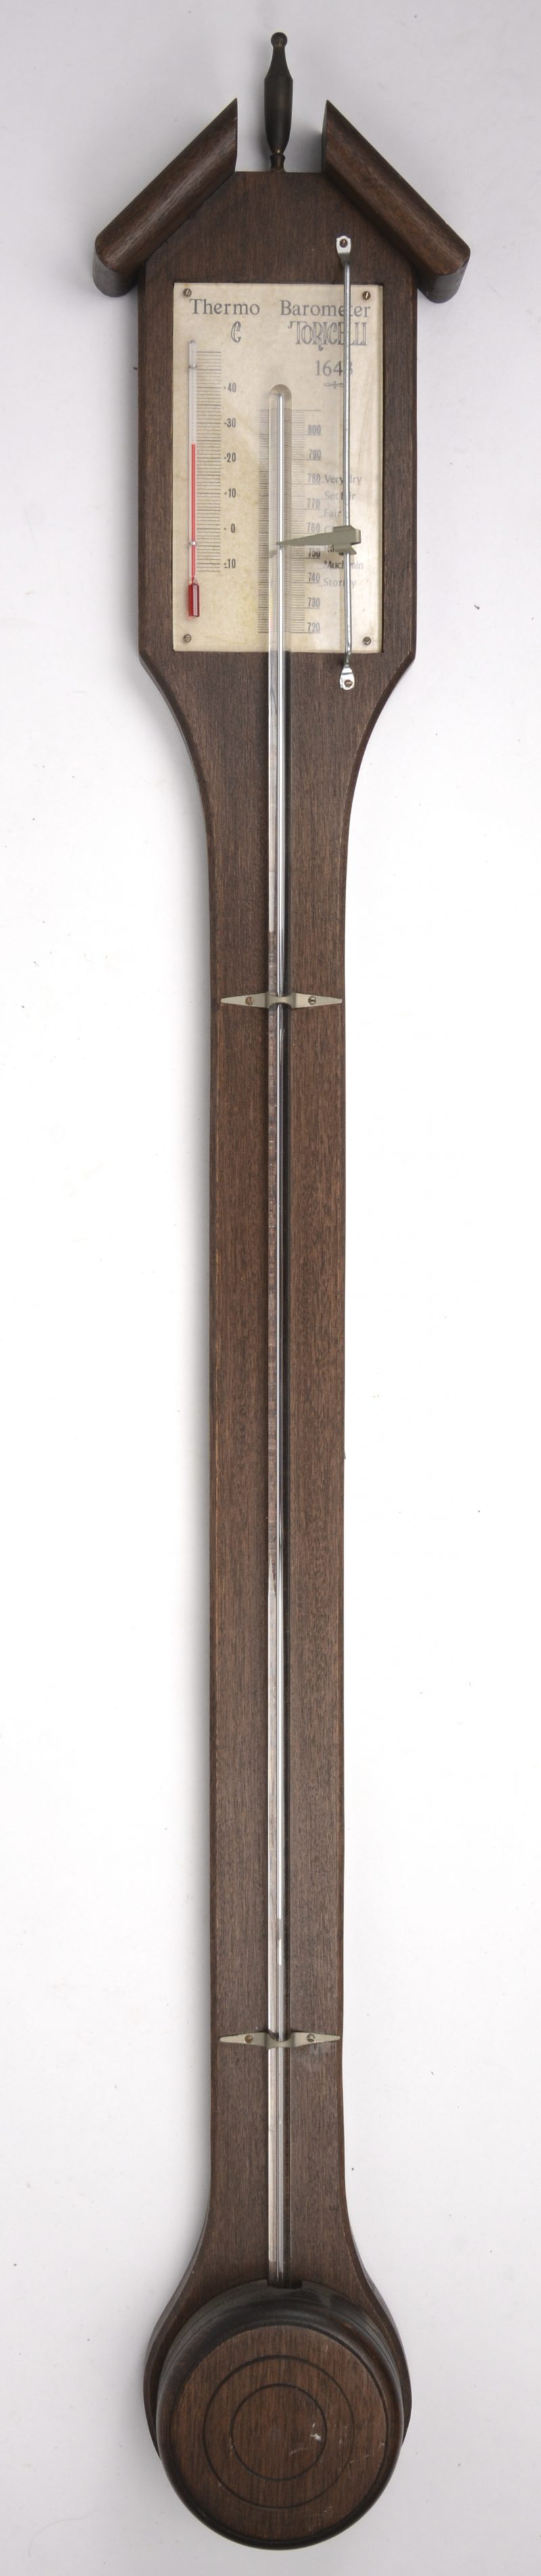 Een barometer - thermometer op houten muurplank.